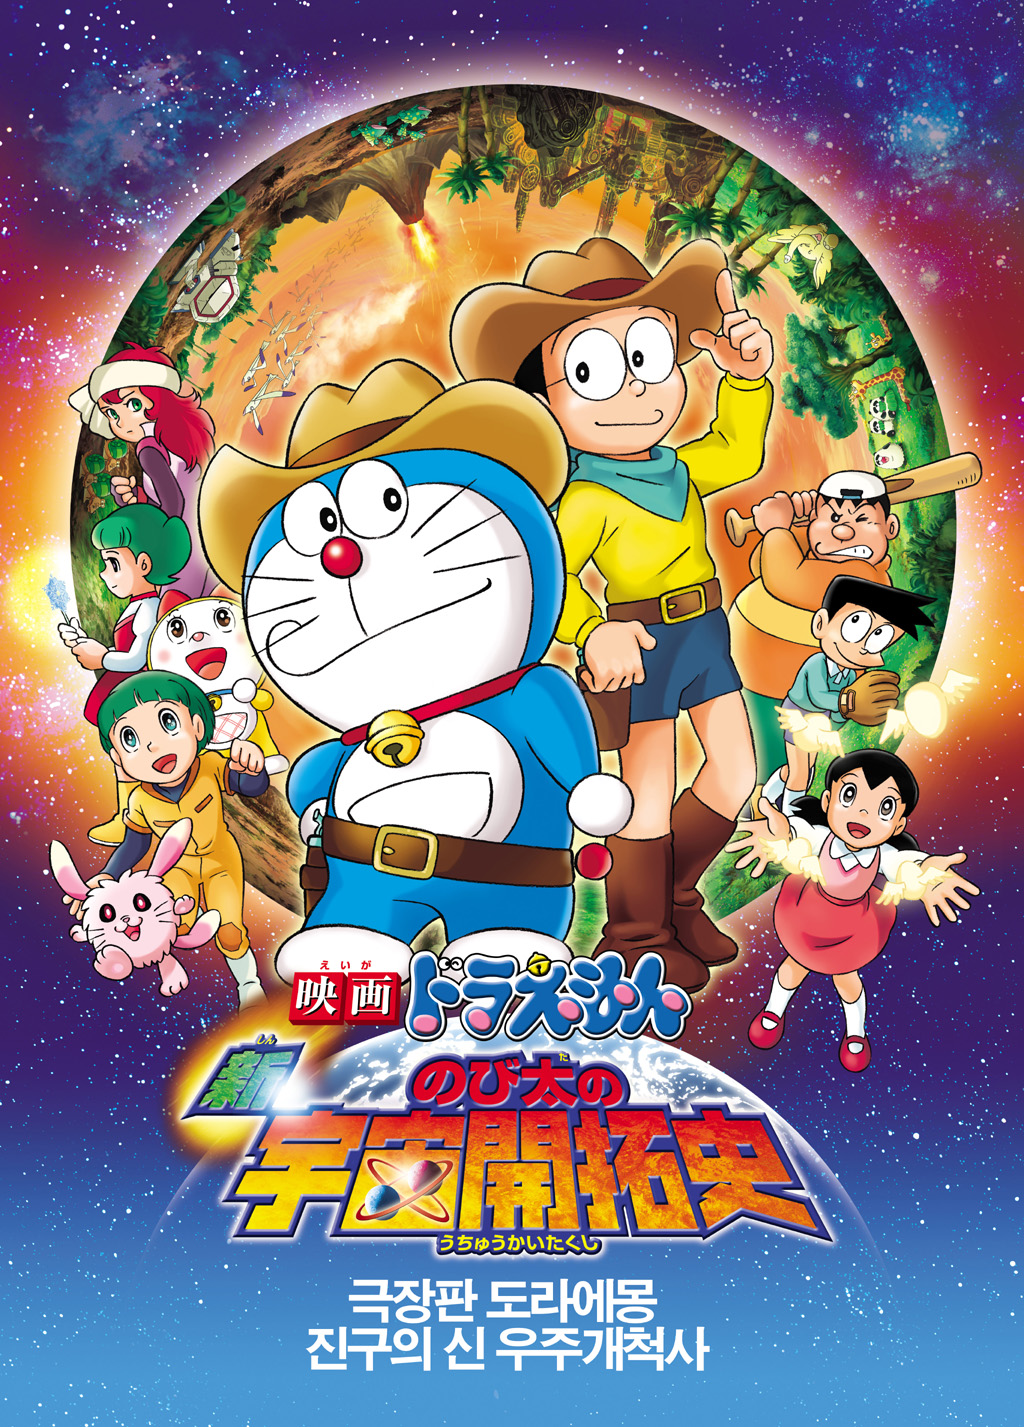 Doraemon The Movie โดเรม่อน เดอะมูฟวี่ ตอน บุกพิภพอวกาศ พากย์ไทย